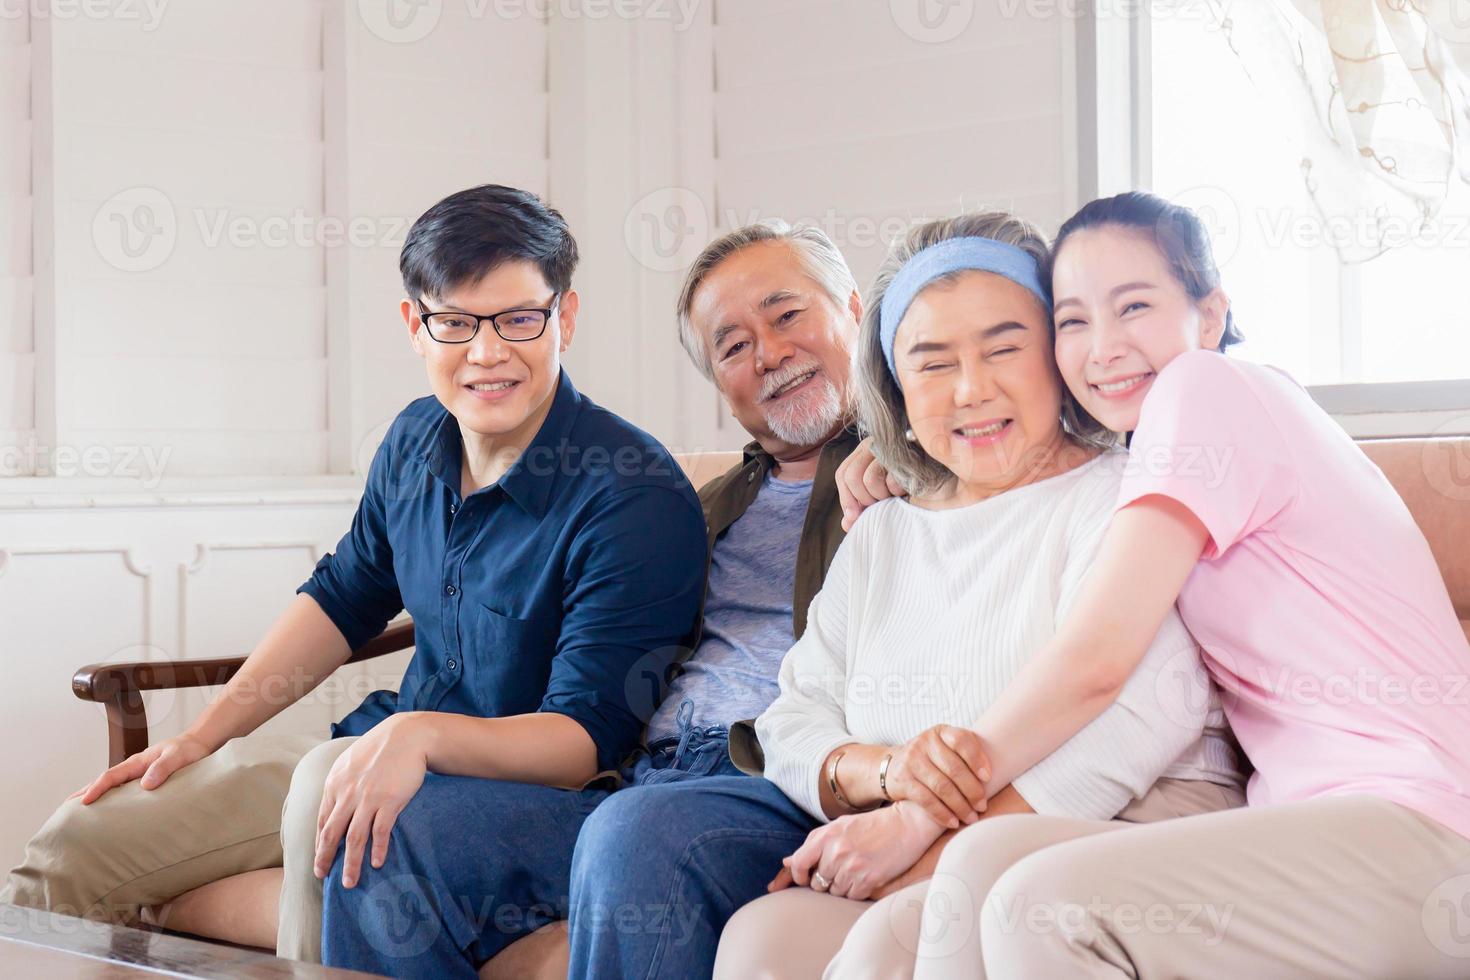 glad asiatisk familj i vardagsrummet, äldre far mamma och medelålders son och dotter sitter på soffan och tittar på kameran, lycka familj koncept foto